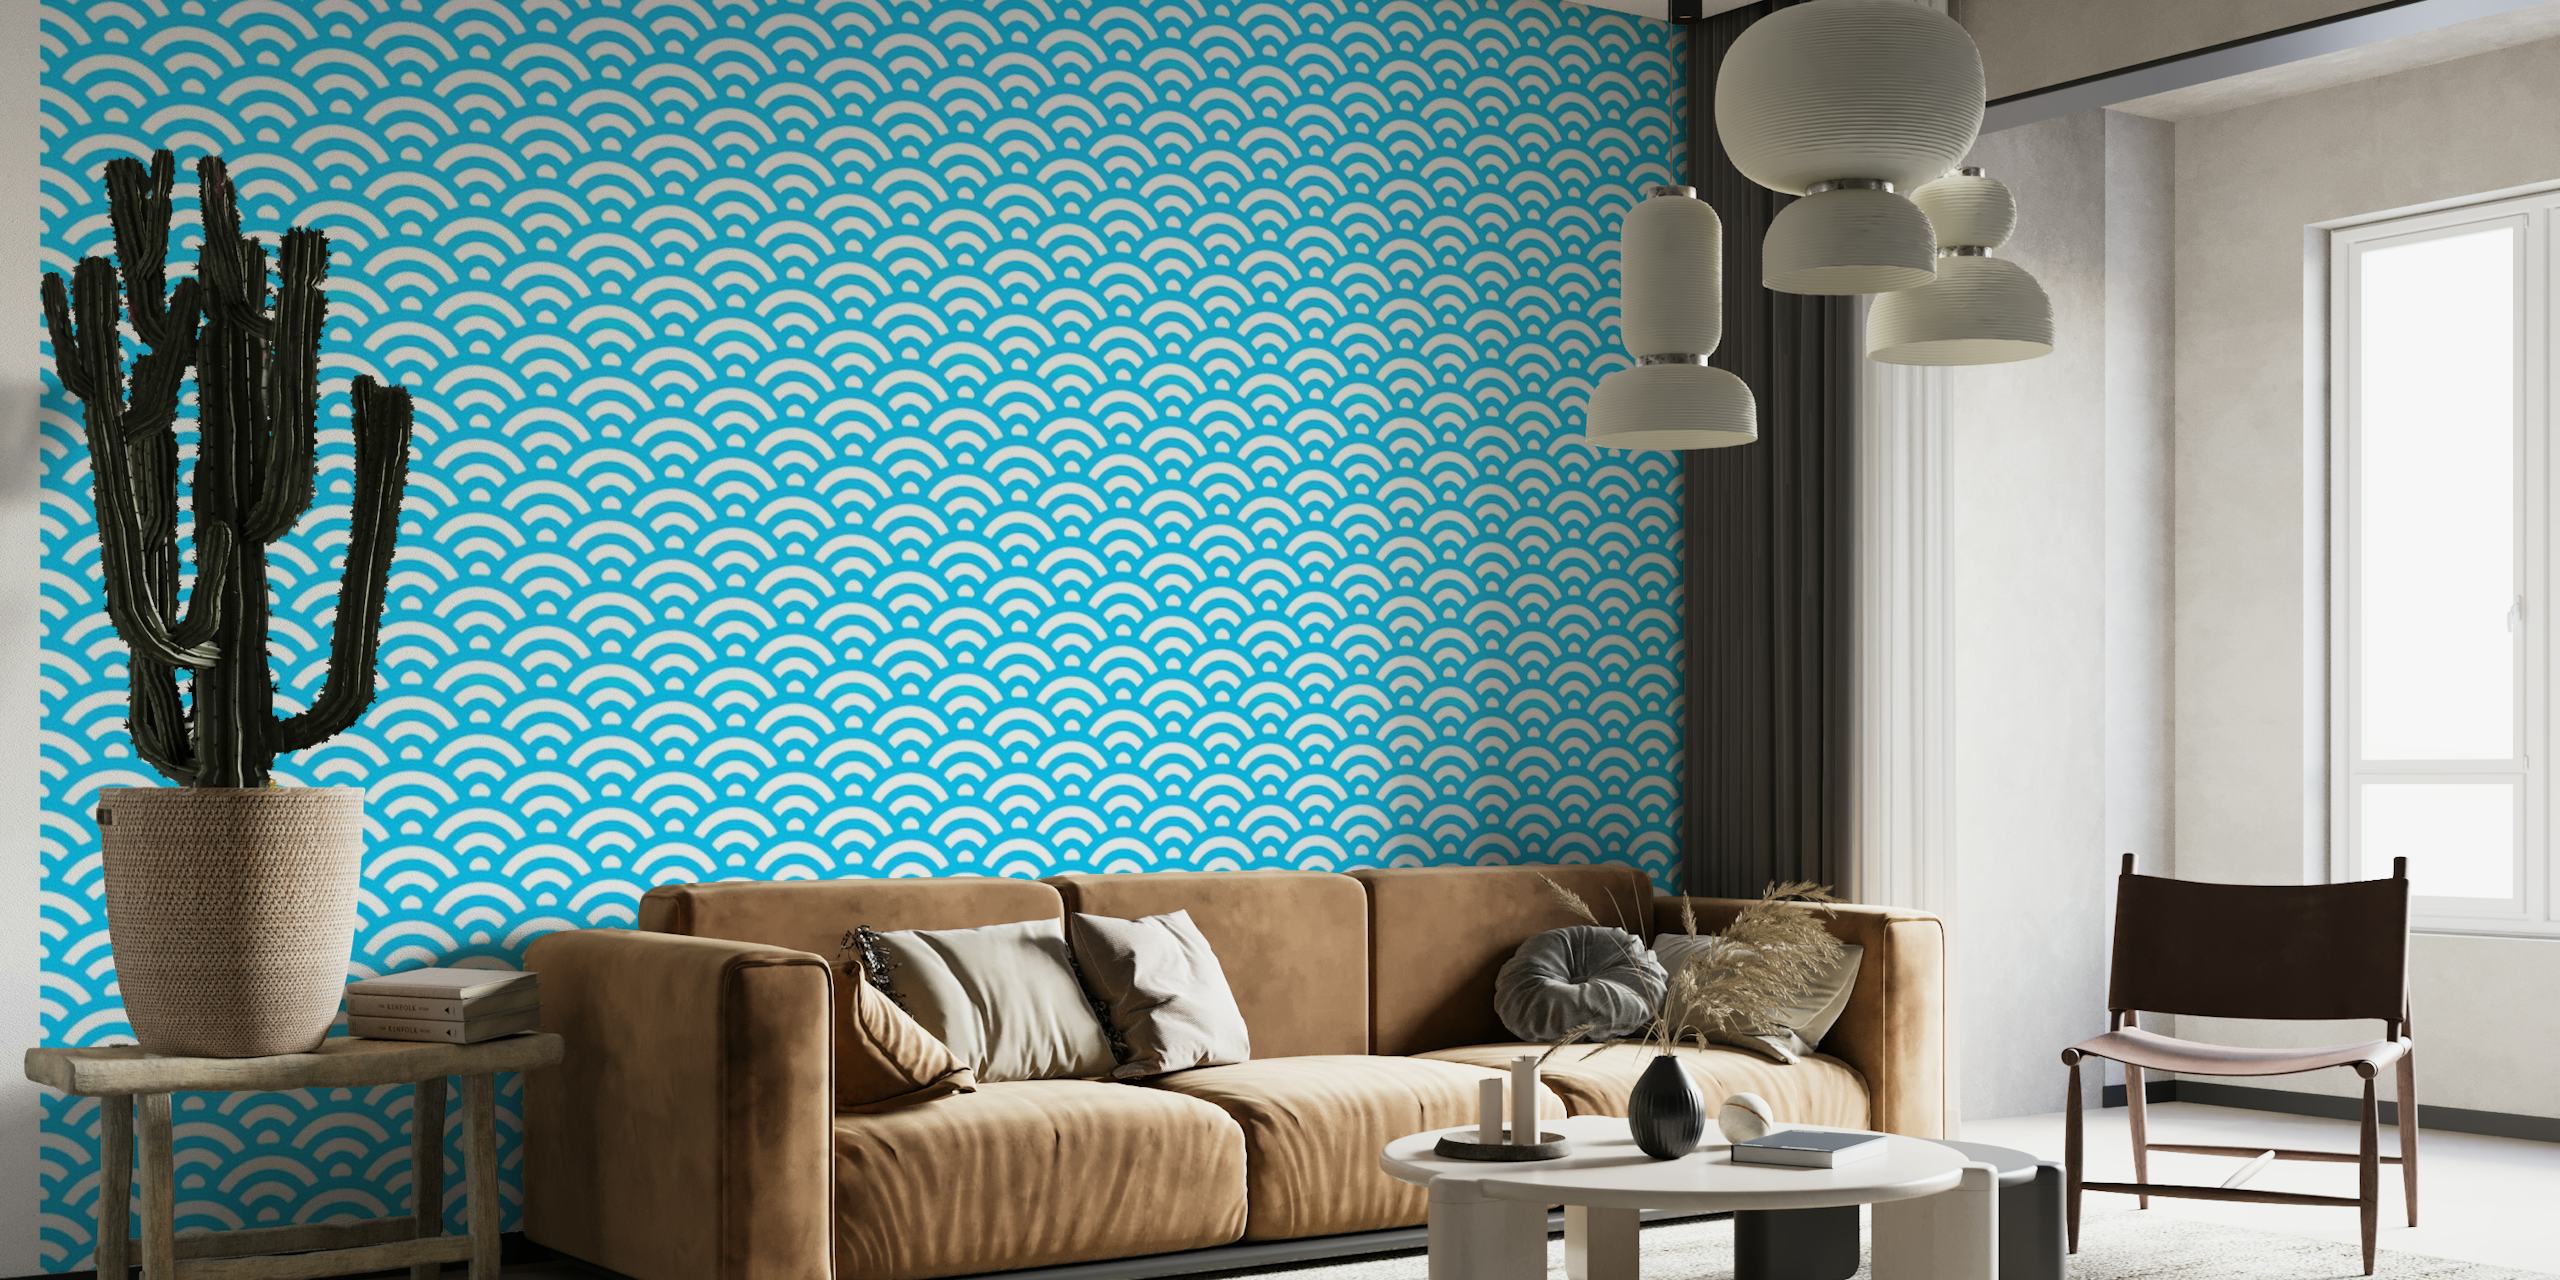 Fotomural vinílico de parede com padrão de onda japonês em tons calmantes de azul, criando um design de oceano sereno e rítmico.